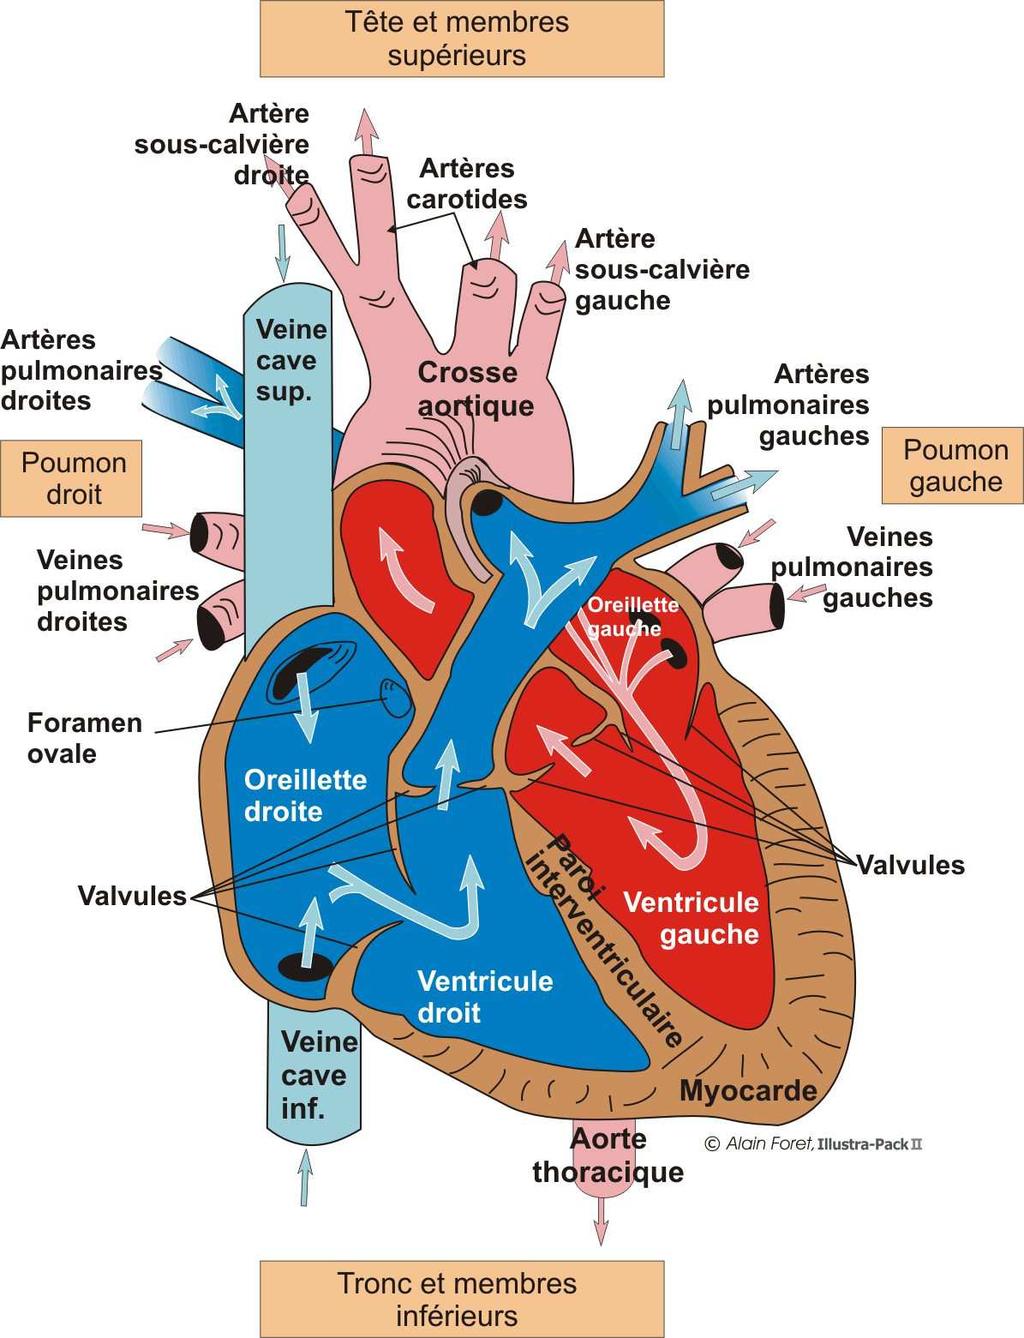 Les artères transportent le sang venant du cœur vers les organes, les veines, elles, transportent le